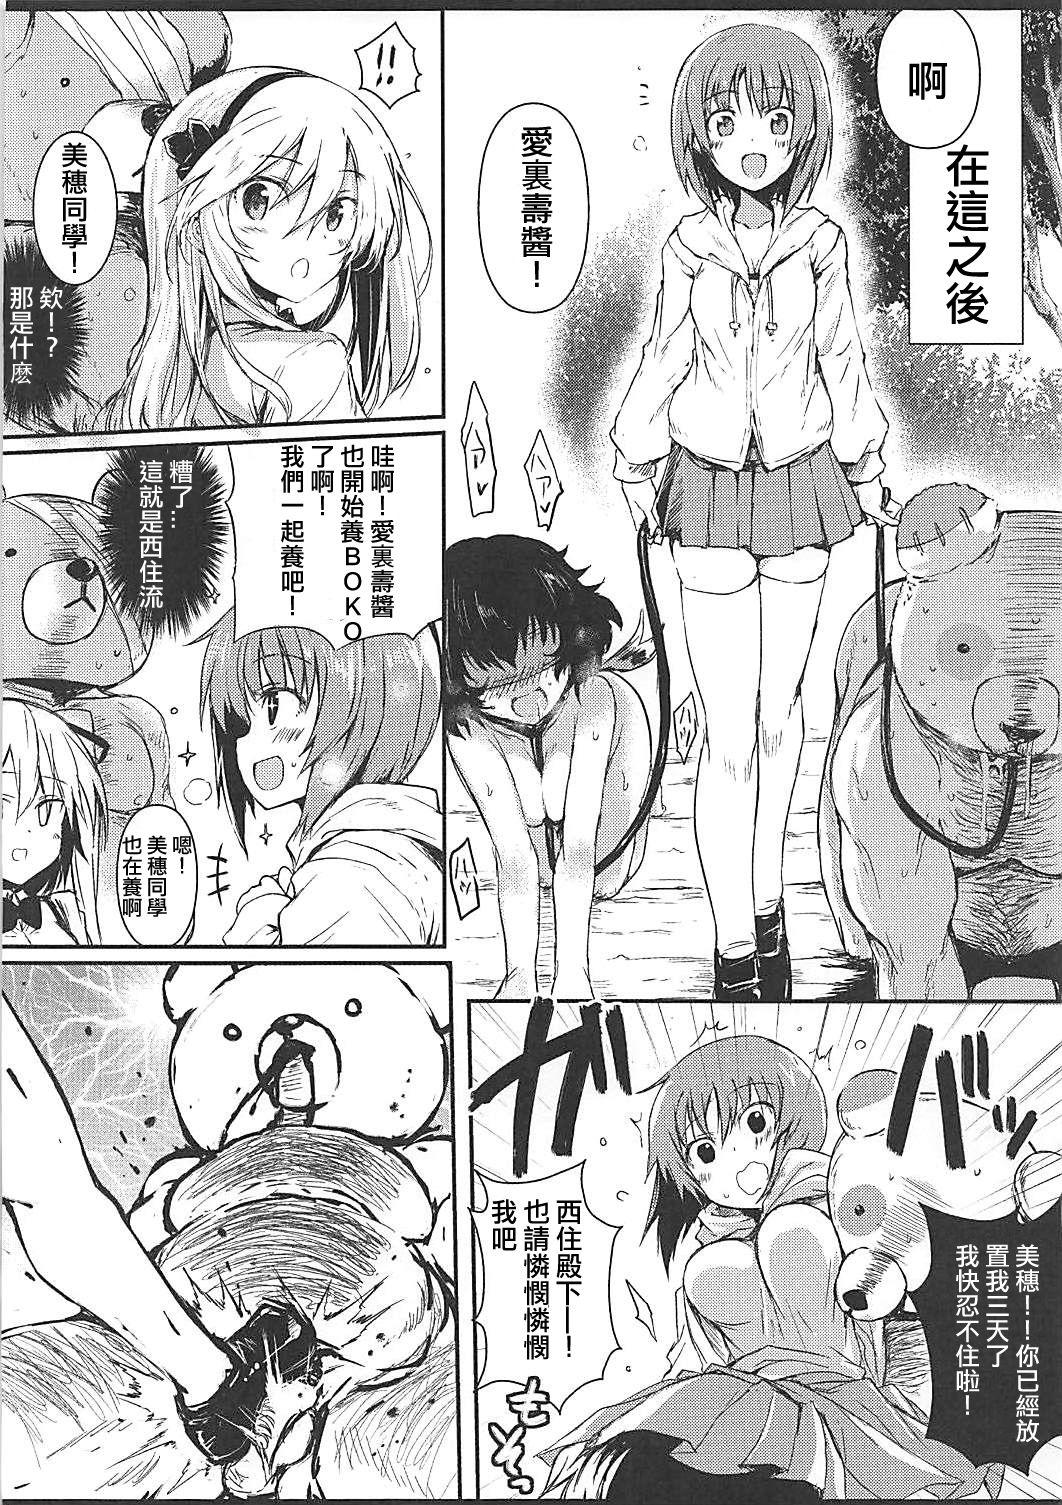 Pegging Tadashii Boko no Shitsukekata - Girls und panzer Cdmx - Page 10